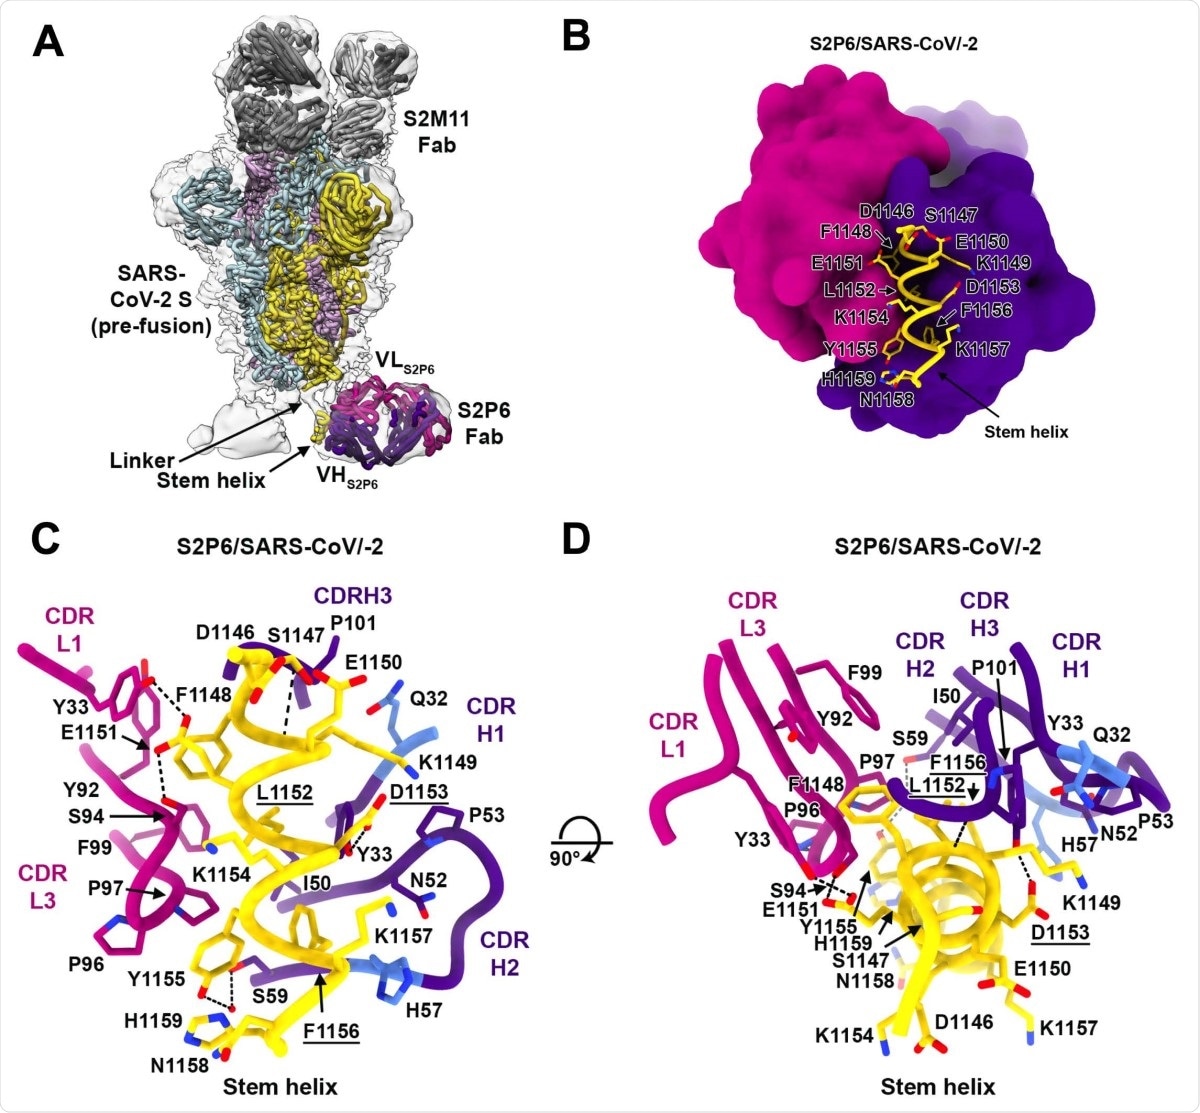 Base estructural para la reactividad cruzada amplia S2P6 con un coronavirus conservado. péptido de la hélice del vástago. (a) Modelo compuesto de la estructura del cryoEM de S2P6-bound SARS-CoV-2 S y de la estructura cristalina del péptido de la hélice del vástago de S2P6-bound atracada en el mapa del cryoEM (superficie gris transparente). Los protomers de SARS-CoV-2 S se colorean rosados, color cianita y el oro, las cadenas pesadas S2P6 y livianas fabulosas son púrpura coloreada y la magenta y las cadenas pesadas S2M11 y livianas fabulosas se colorean oscuras y grises claras, respectivamente. (b) Diagrama de la cinta del S2P6 fabuloso (representación superficial) en complejo con el péptido de la hélice del vástago de SARS-CoV-2 S (cinta amarilla con las cadenas laterales rendidas como bastones y etiqueta). Diagrama de la cinta (del CD) en dos orientaciones ortogonales del salto fabuloso S2P6 al péptido de la hélice del vástago de SARS-CoV-2 S que muestra una red conservada de acciones recíprocas. Solamente los residuos dominantes del interfaz y los rizos de los CDR S2P6 se muestran para mayor clareza. Los residuos Q32 y H57, de que son transformados durante la maduración de la afinidad de la cadena pesada S2P6, se colorean azul. Las ligazones de hidrógeno se indican con las líneas discontinuas. Los residuos substituidos en los mutantes del escape aislados se subrayan.